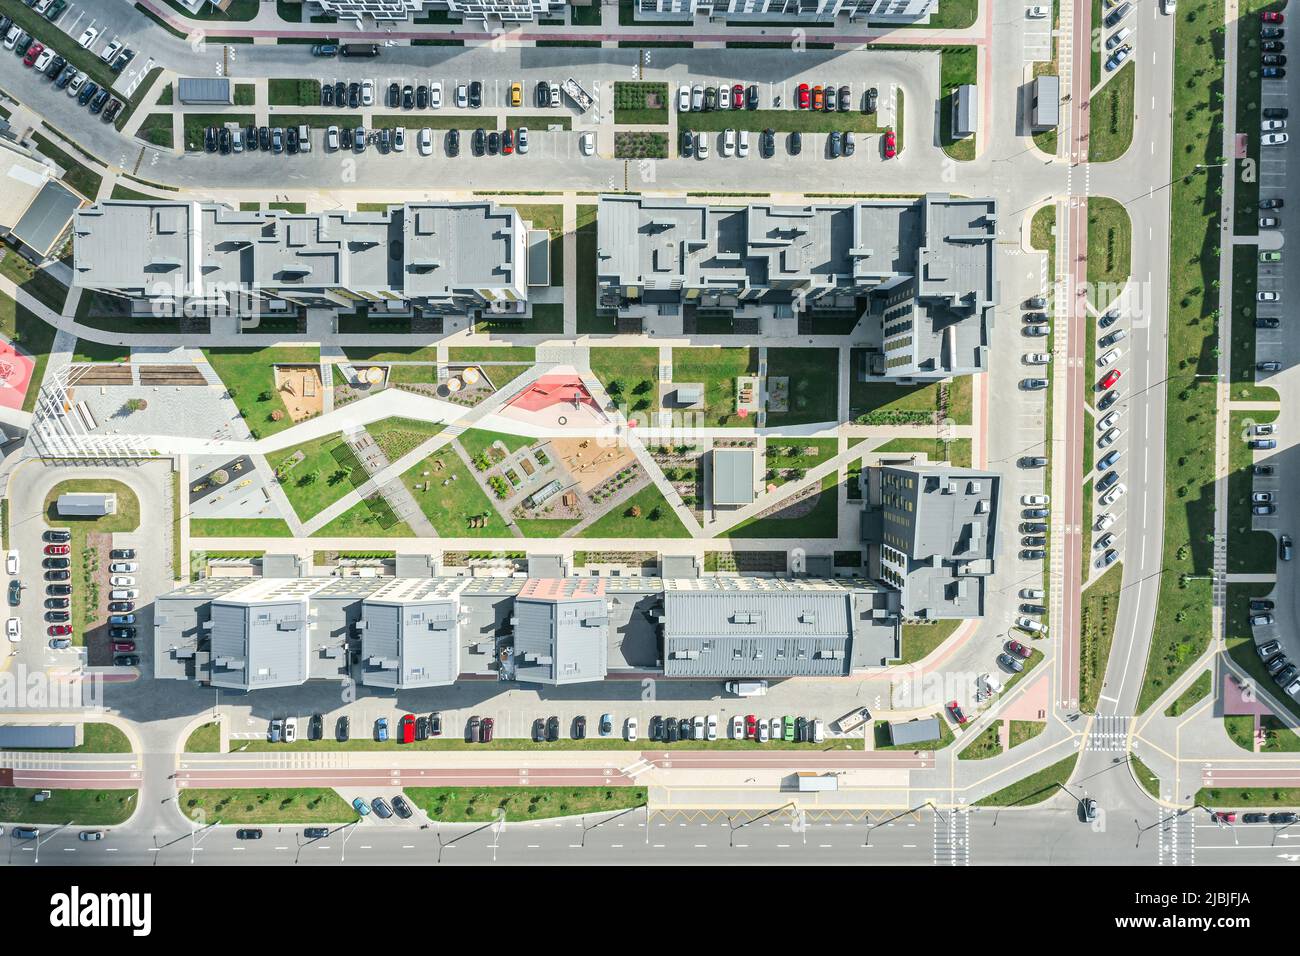 appartamenti in zona residenziale. parchi giochi, auto, parcheggi, strade urbane. vista dall'alto aerea. Foto Stock